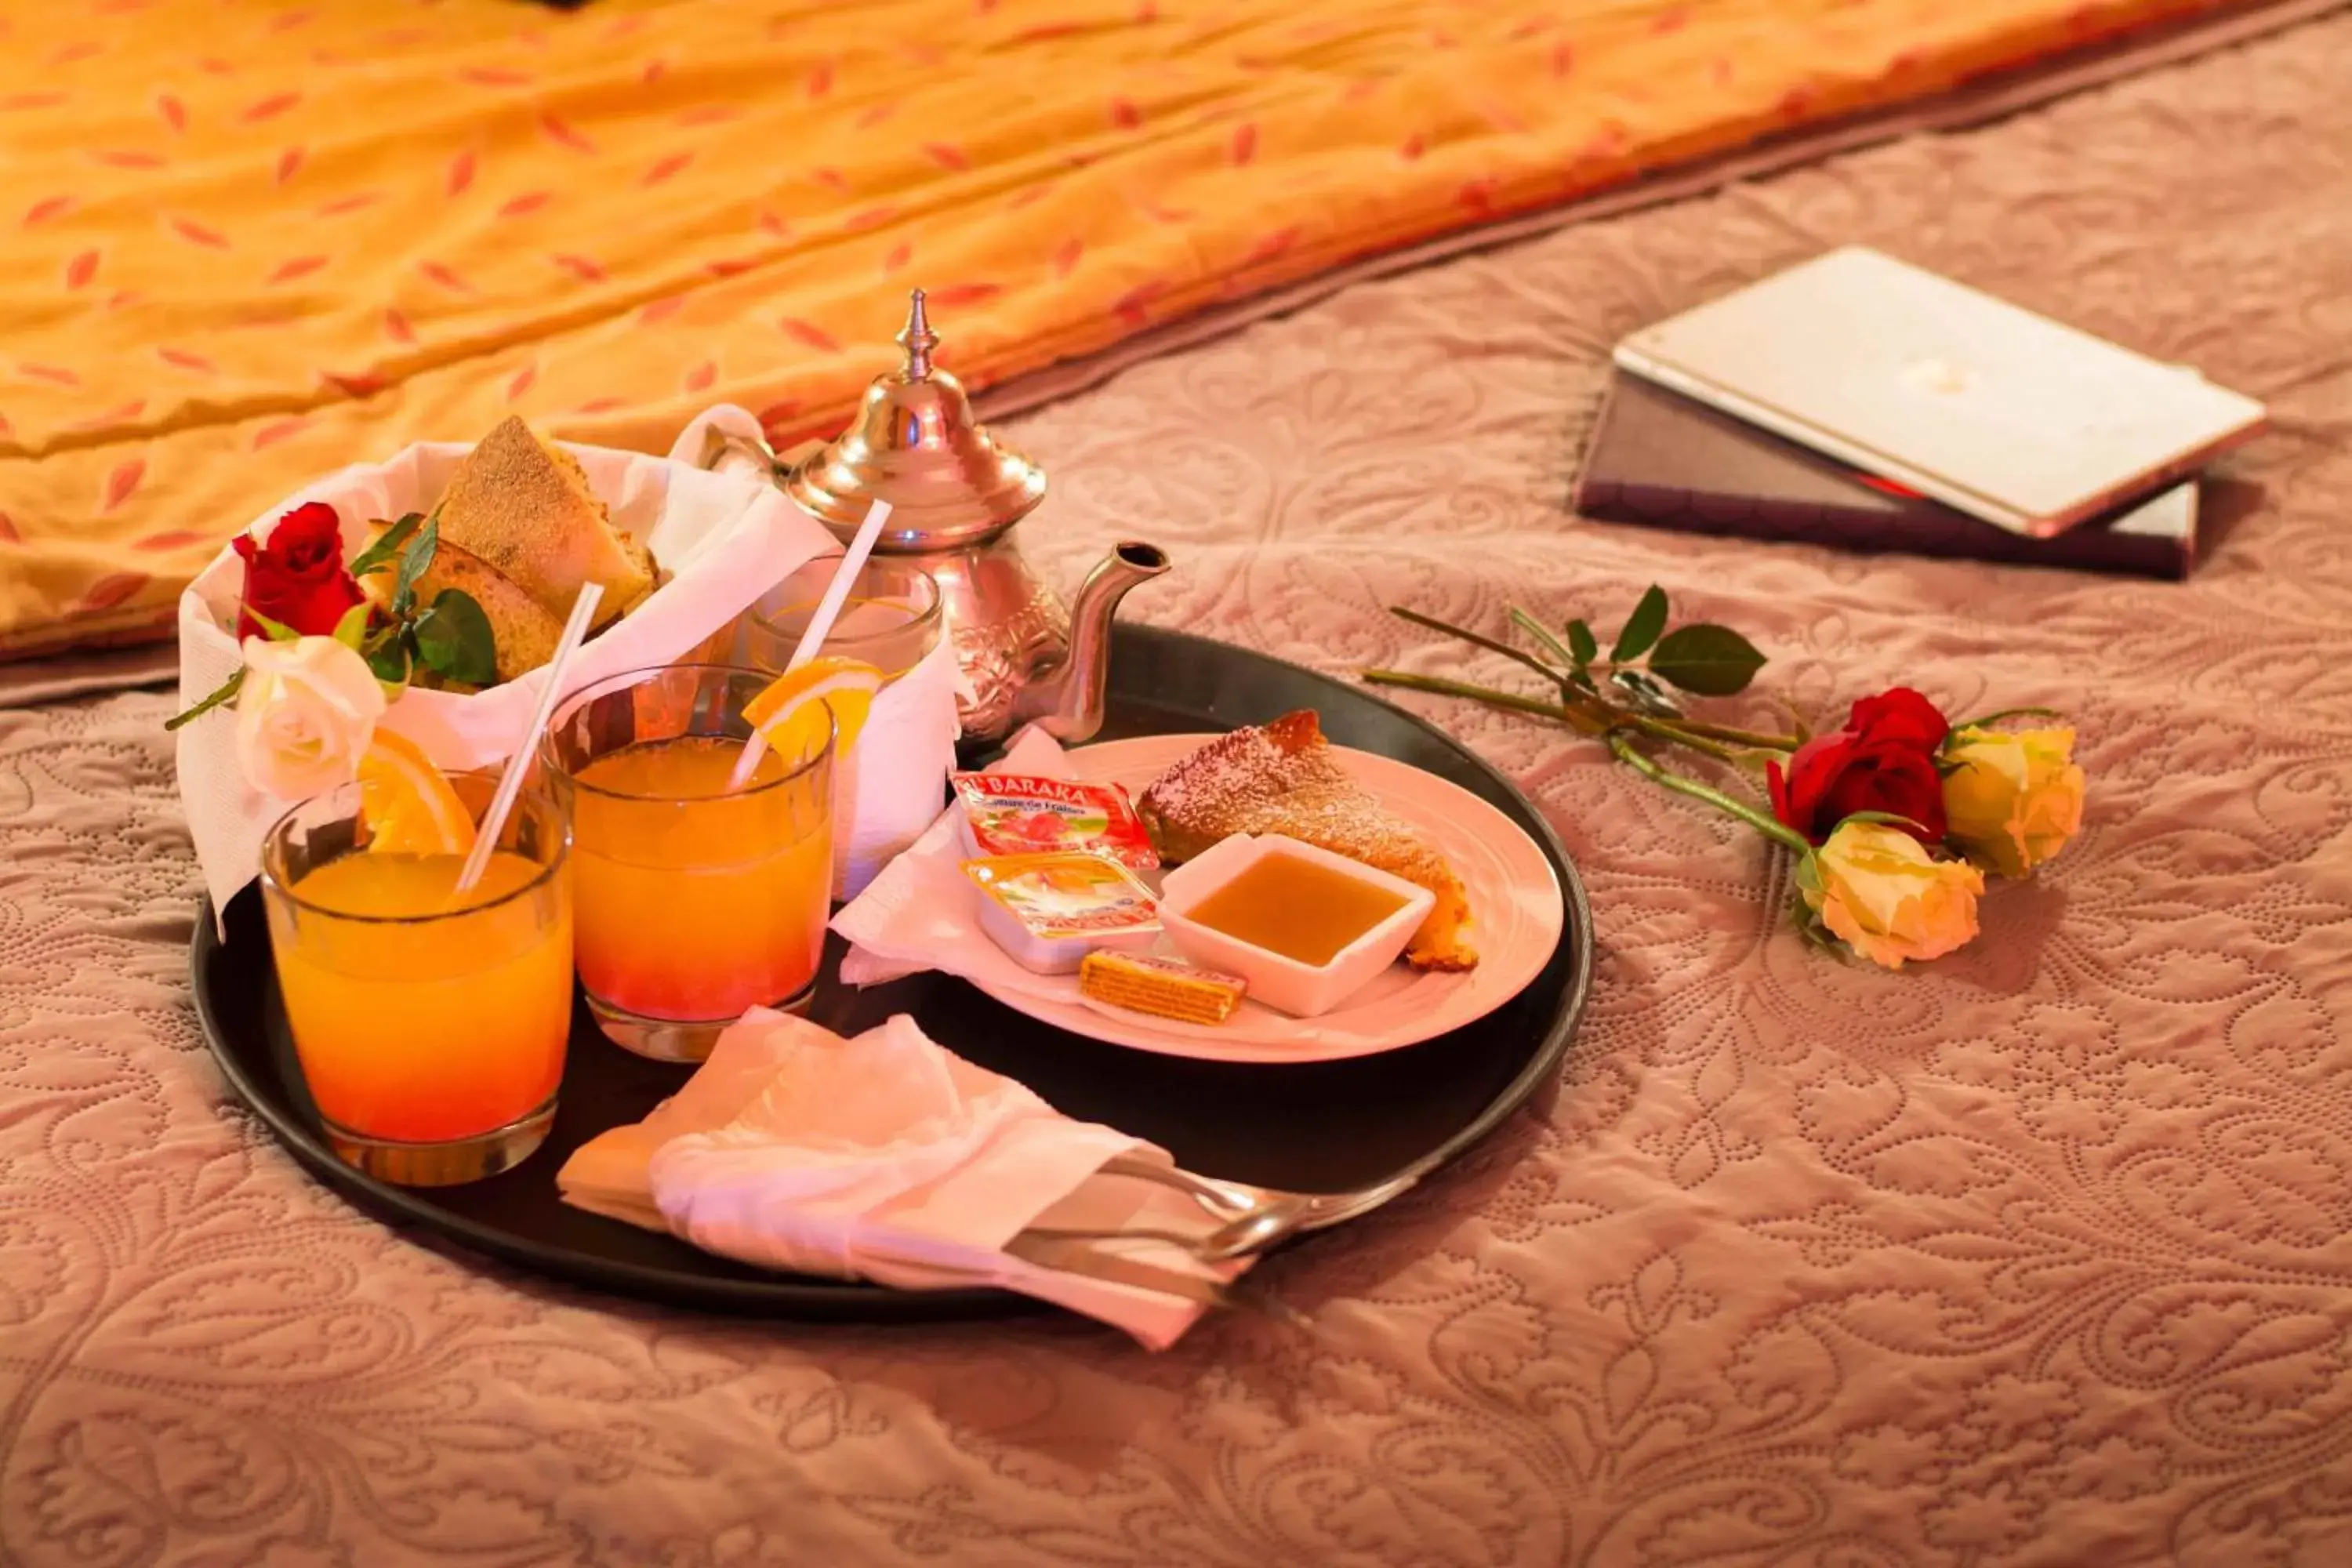 Restaurant/places to eat in Le Relais De Marrakech